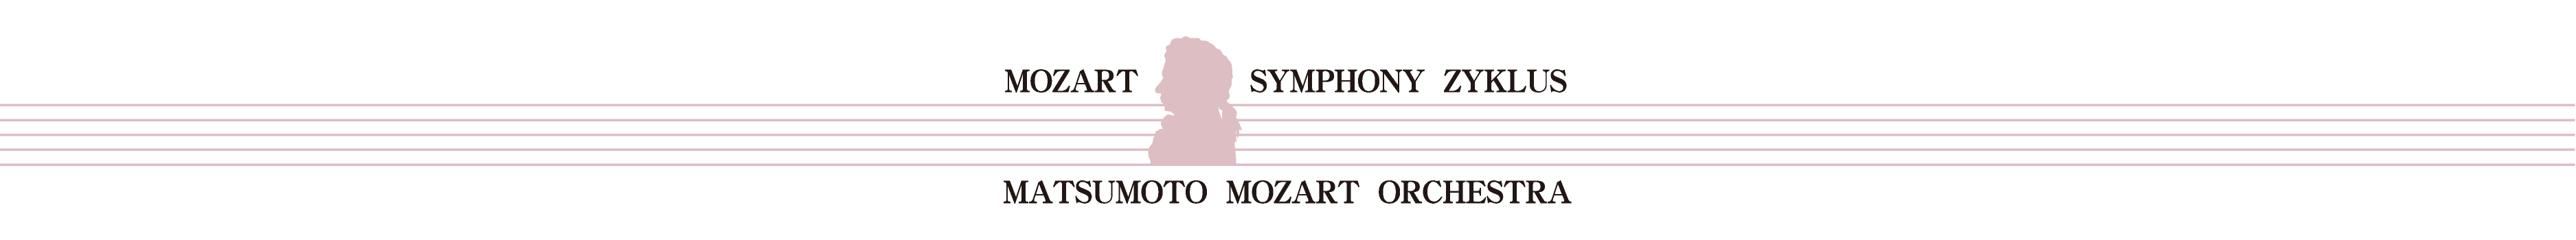 第21回 モーツァルト交響曲・全曲演奏会